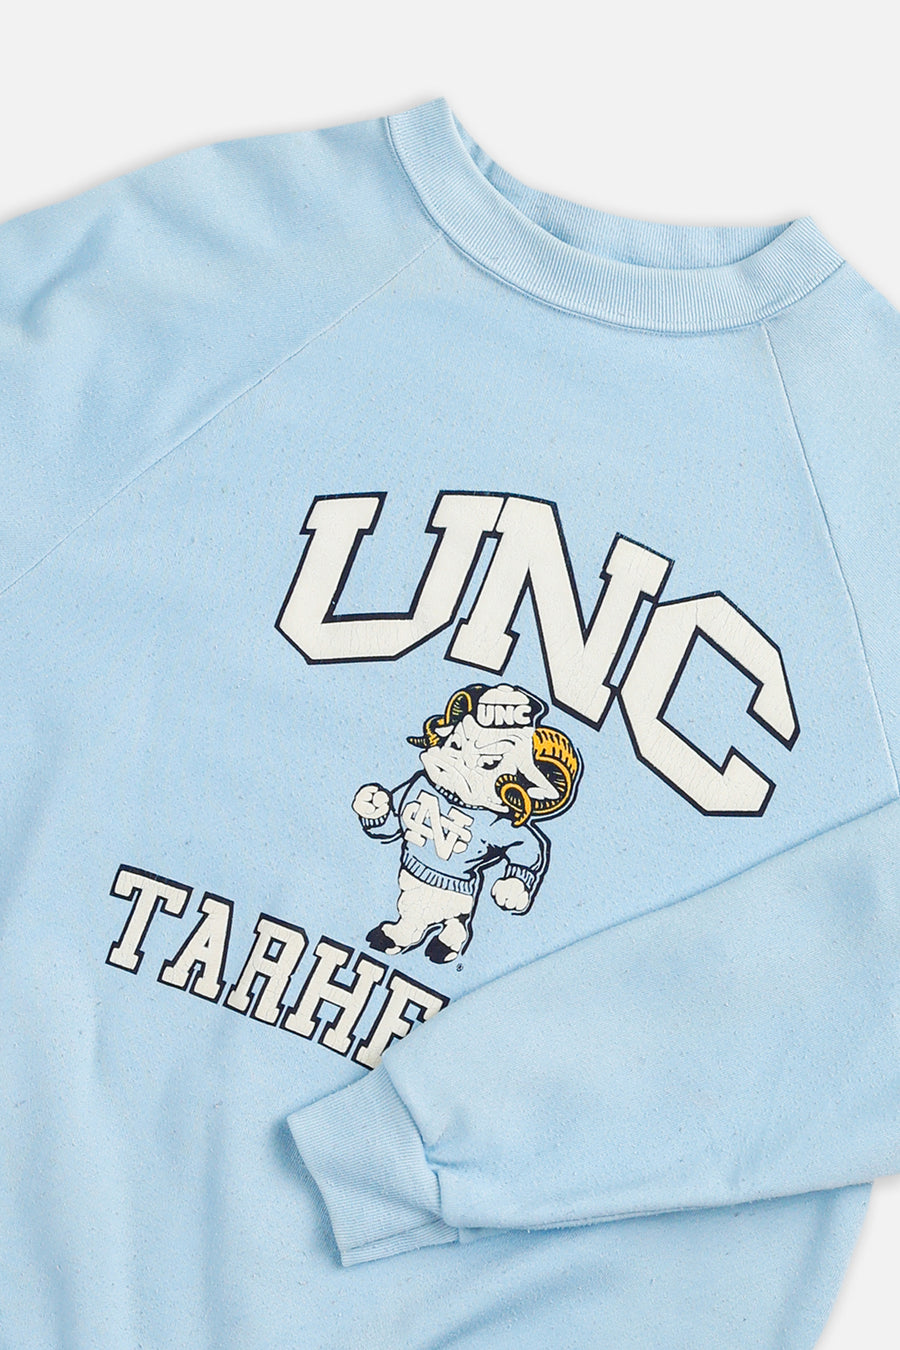 Vintage North Carolina Tarheels Sweatshirt - L